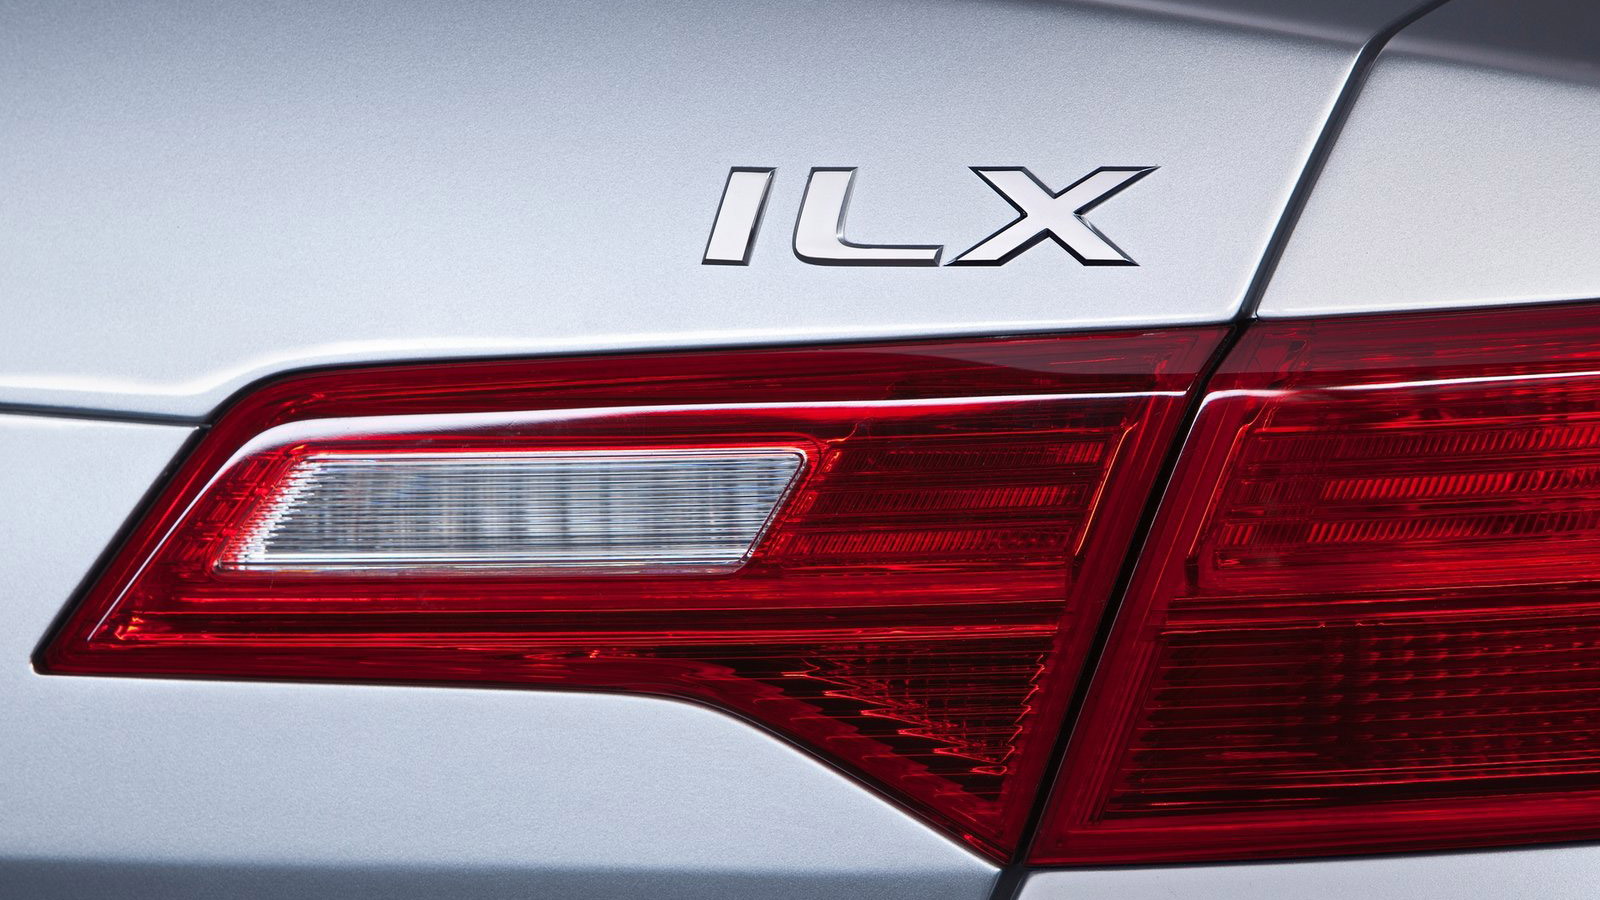 Acura ILX Concept